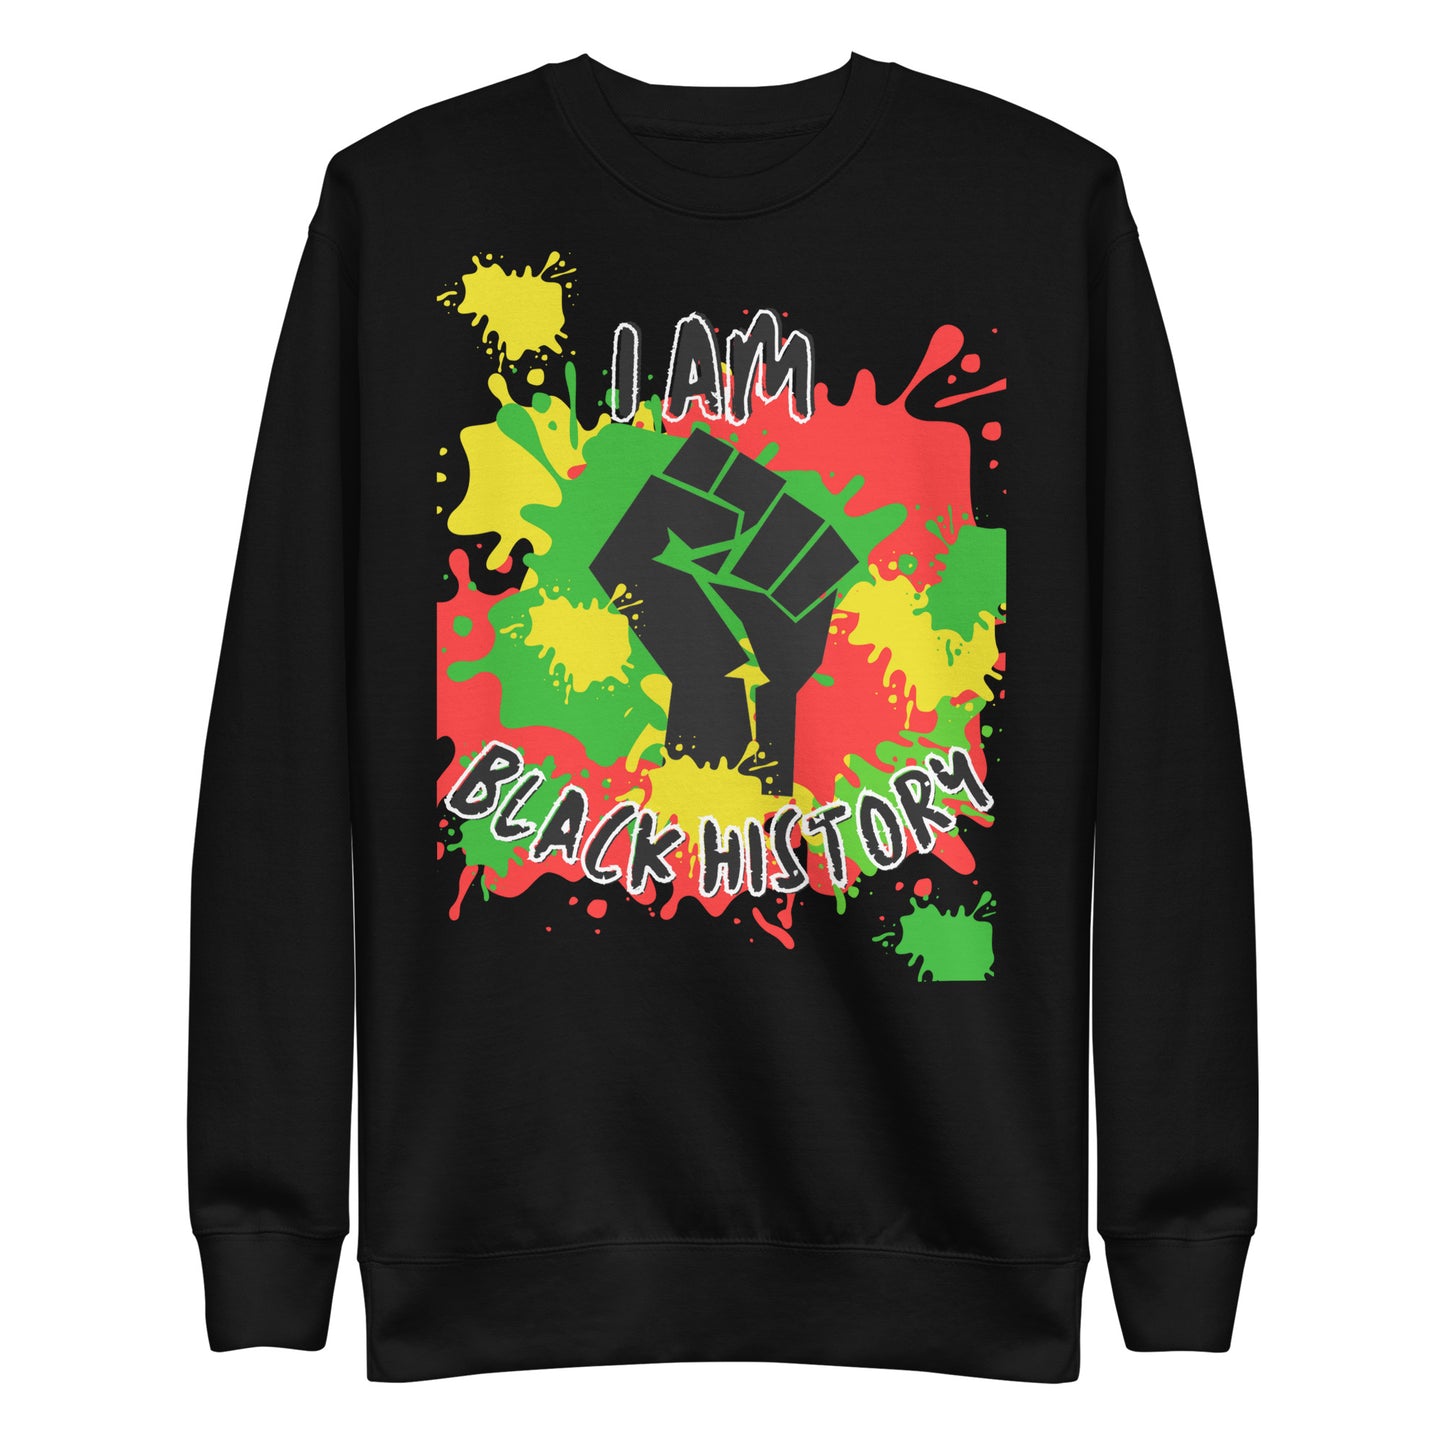 Adult Unisex "Black History" Sweatshirt